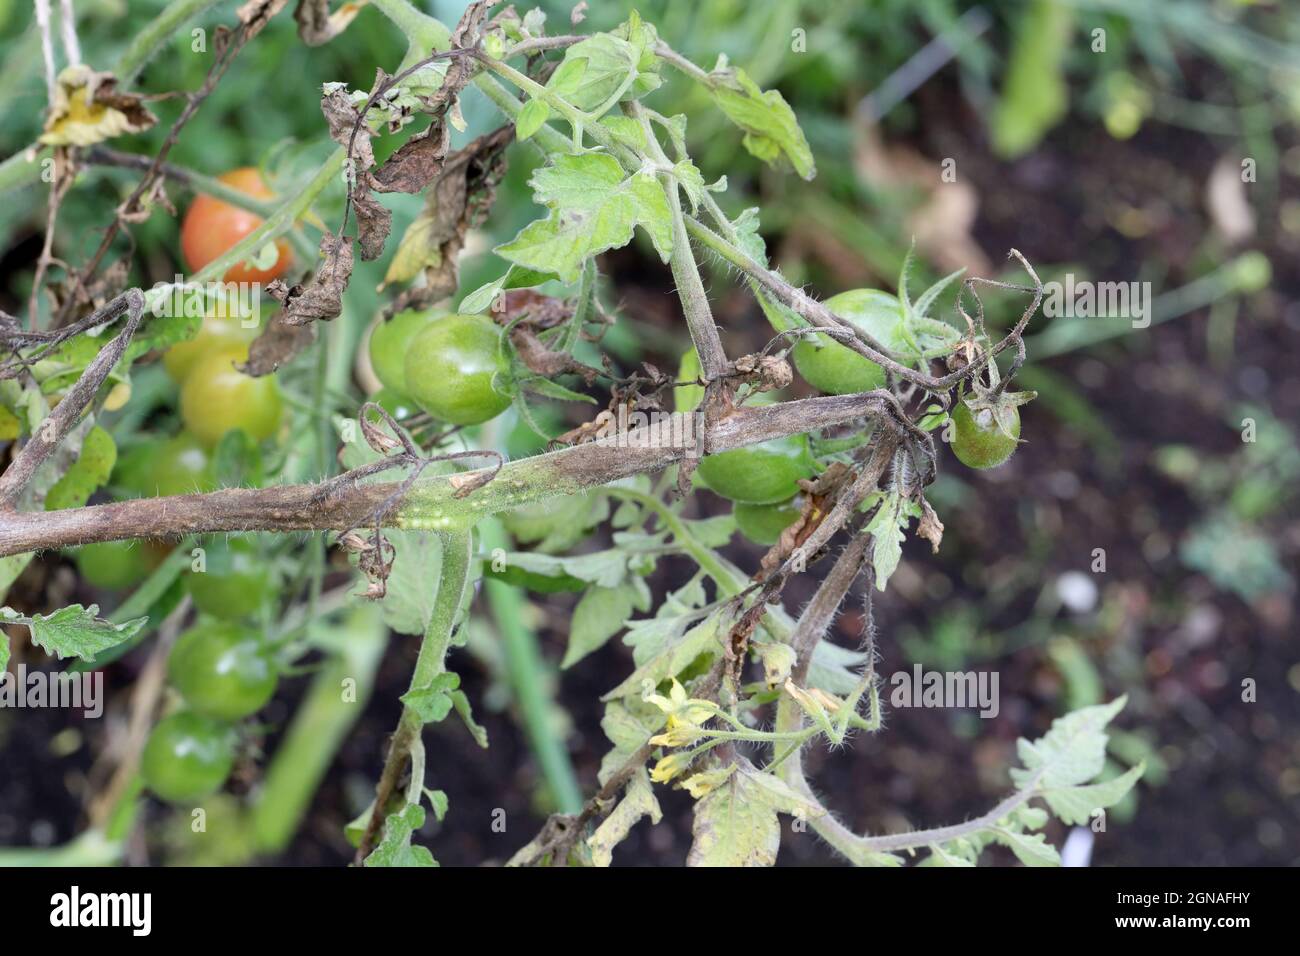 Die Krankheiten der Tomate - die späte Schlage oder die Kartoffelfäule (sie greift die Kartoffeln auch an). Tomatenanfall Phytophthora (Phytophthora Infestans) In Gemüsegarten Stockfoto